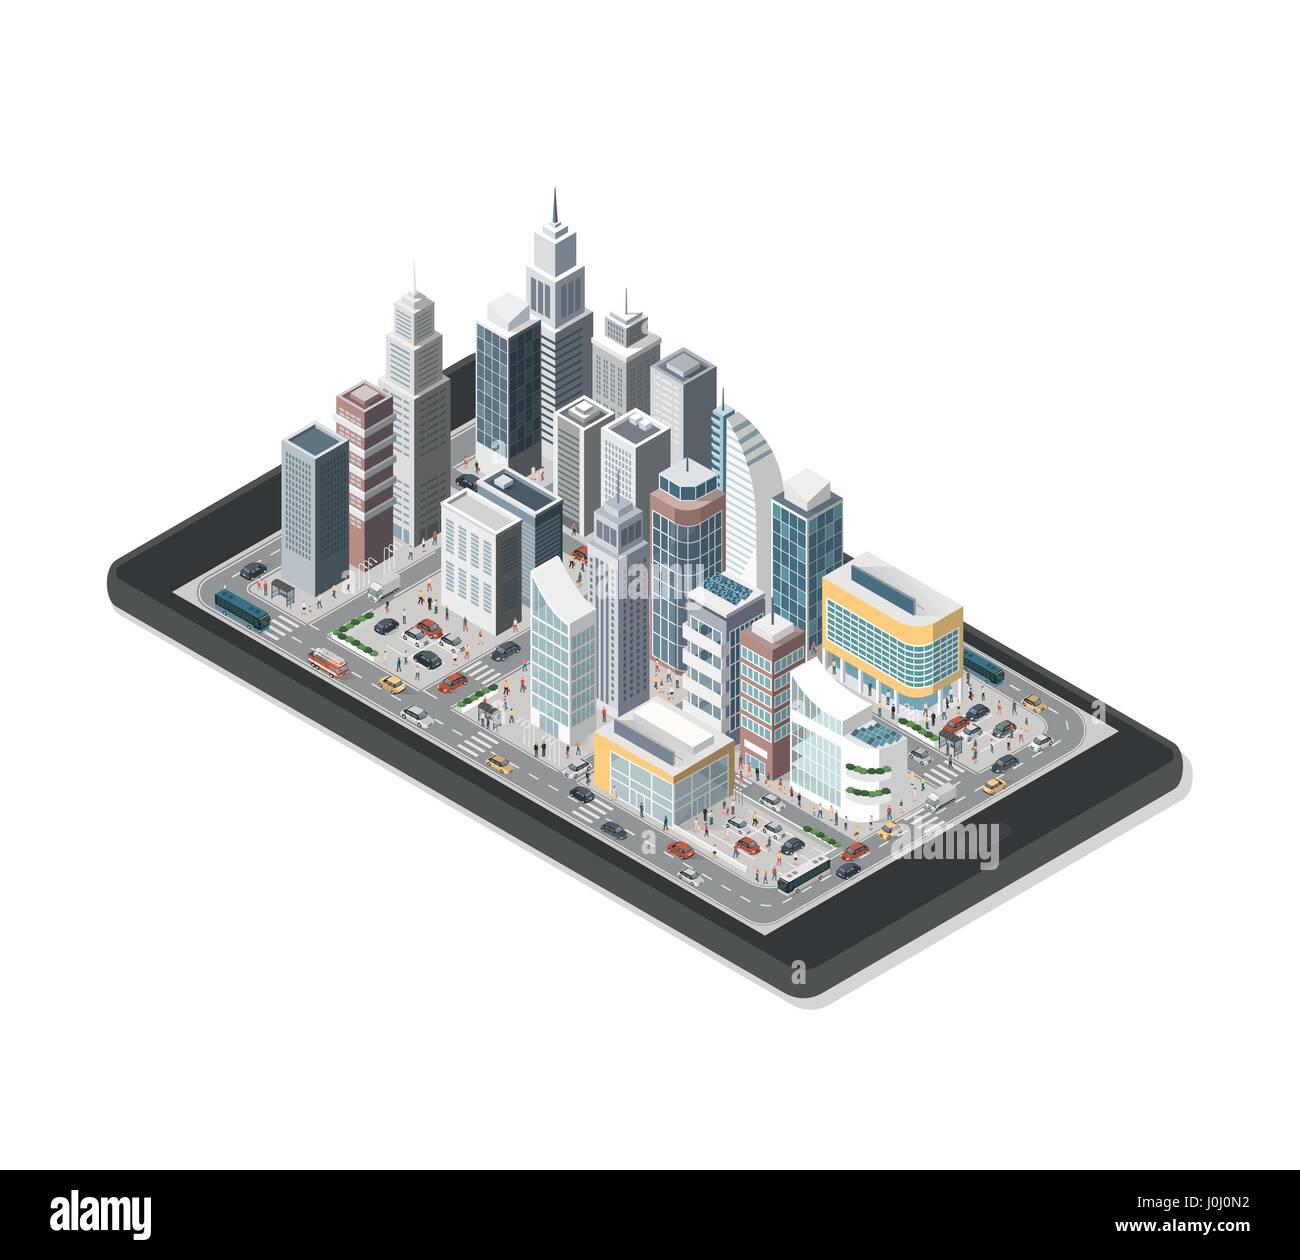 Smart city isométrique contemporain sur une tablette numérique avec des gratte-ciel, les personnes et véhicules sur fond blanc Illustration de Vecteur